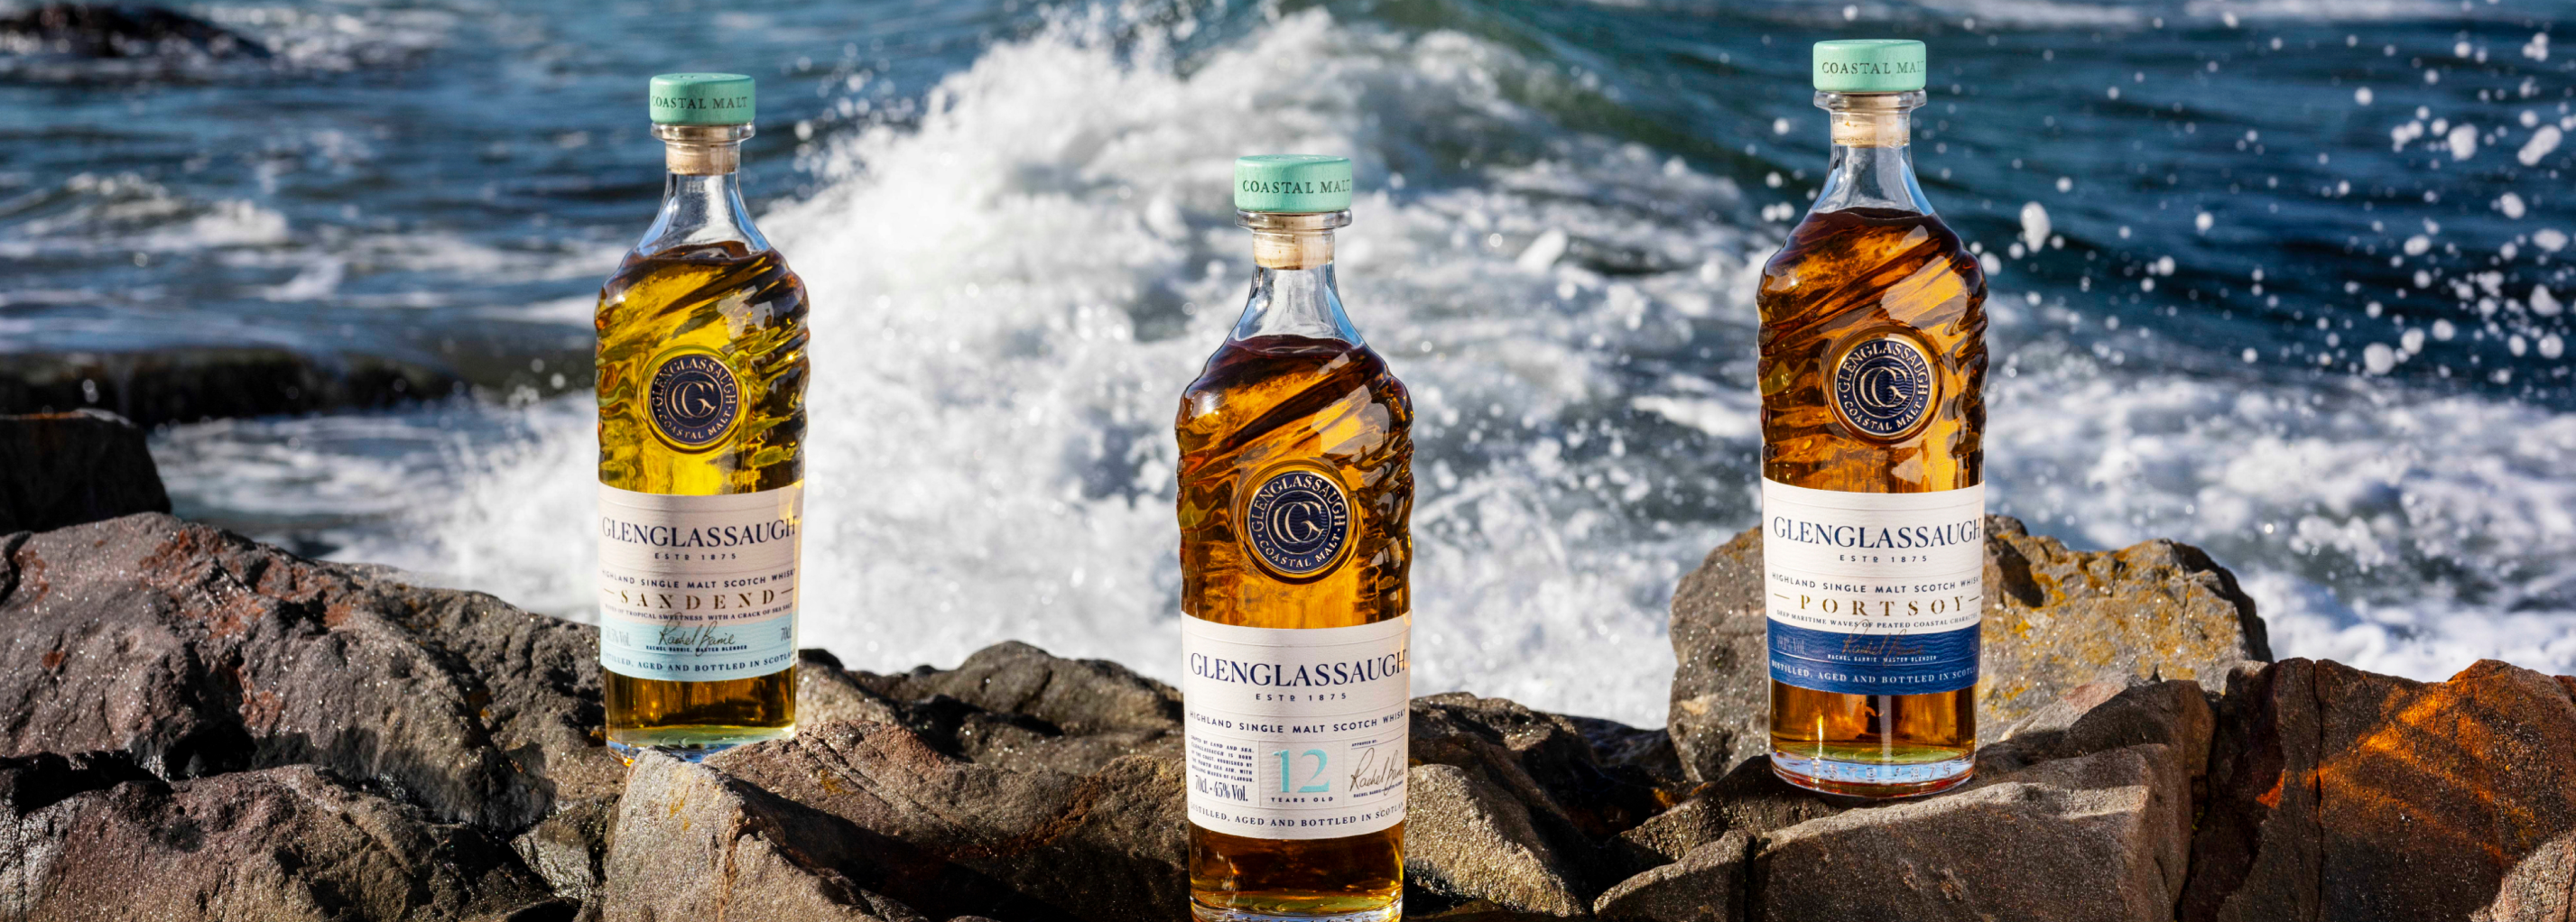 Glenglassaugh Sandend - Single Malt Scotch Whisky